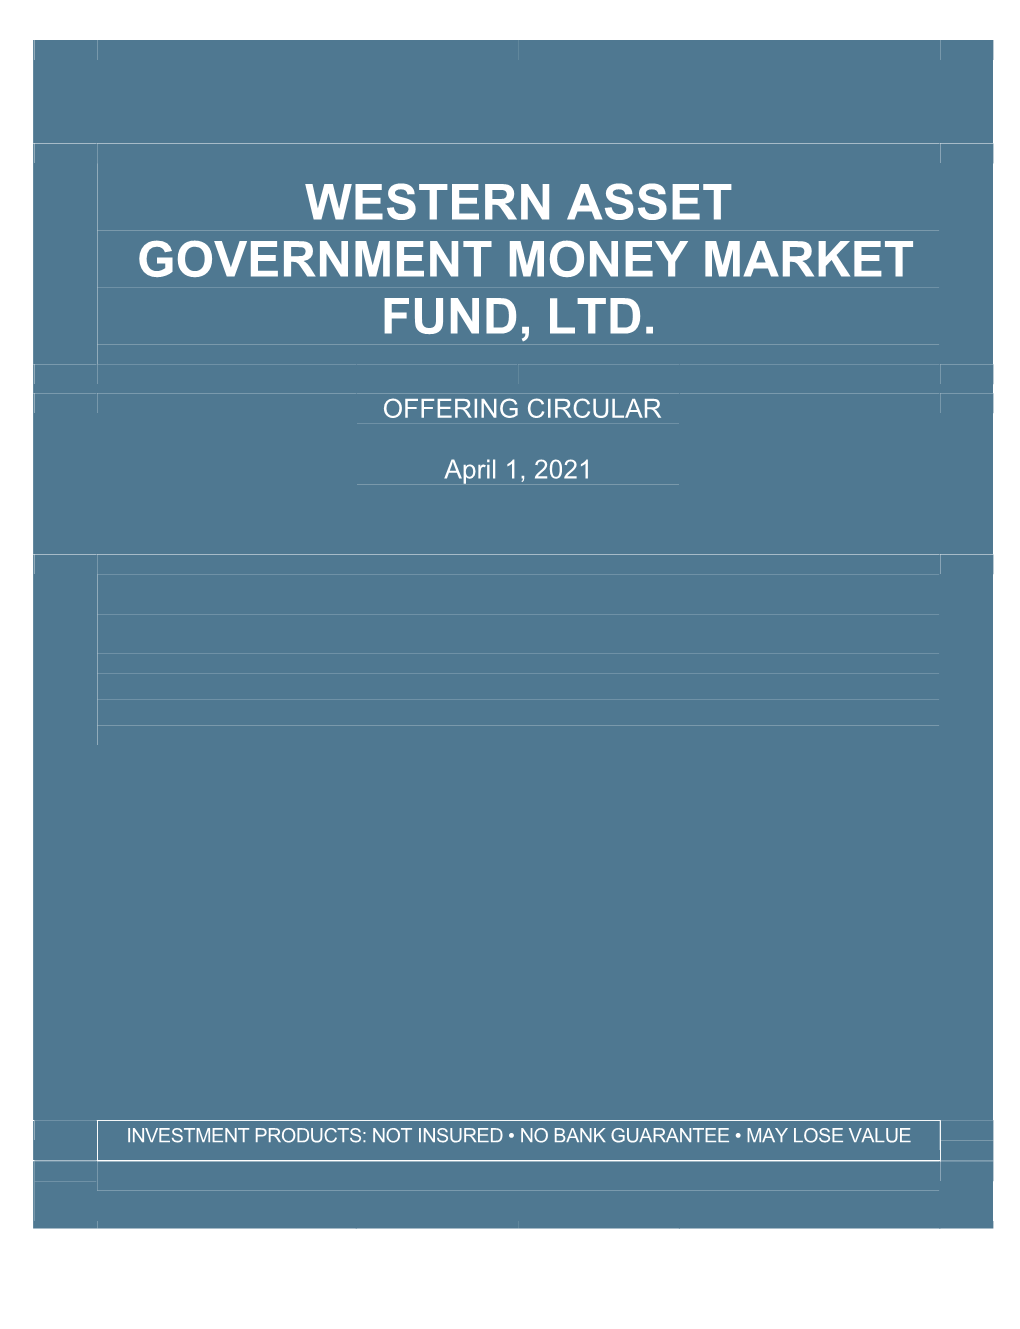 Western Asset Government Money Market Fund, Ltd